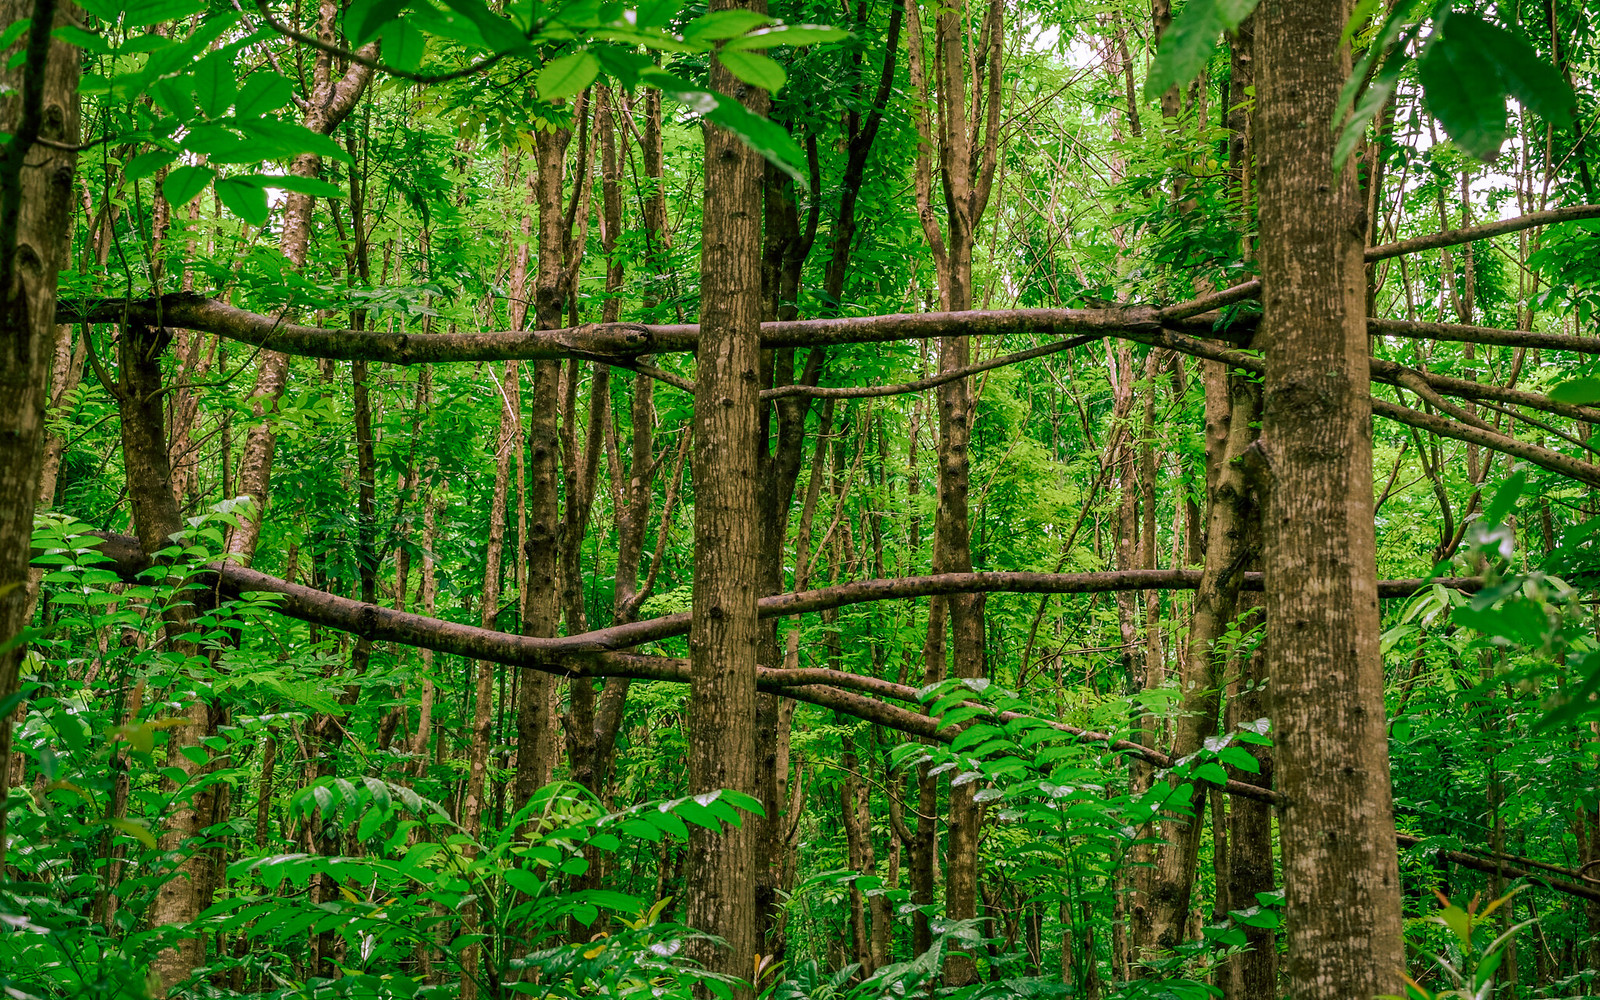 Getting Horizontal in Wai Koa mahogany forest